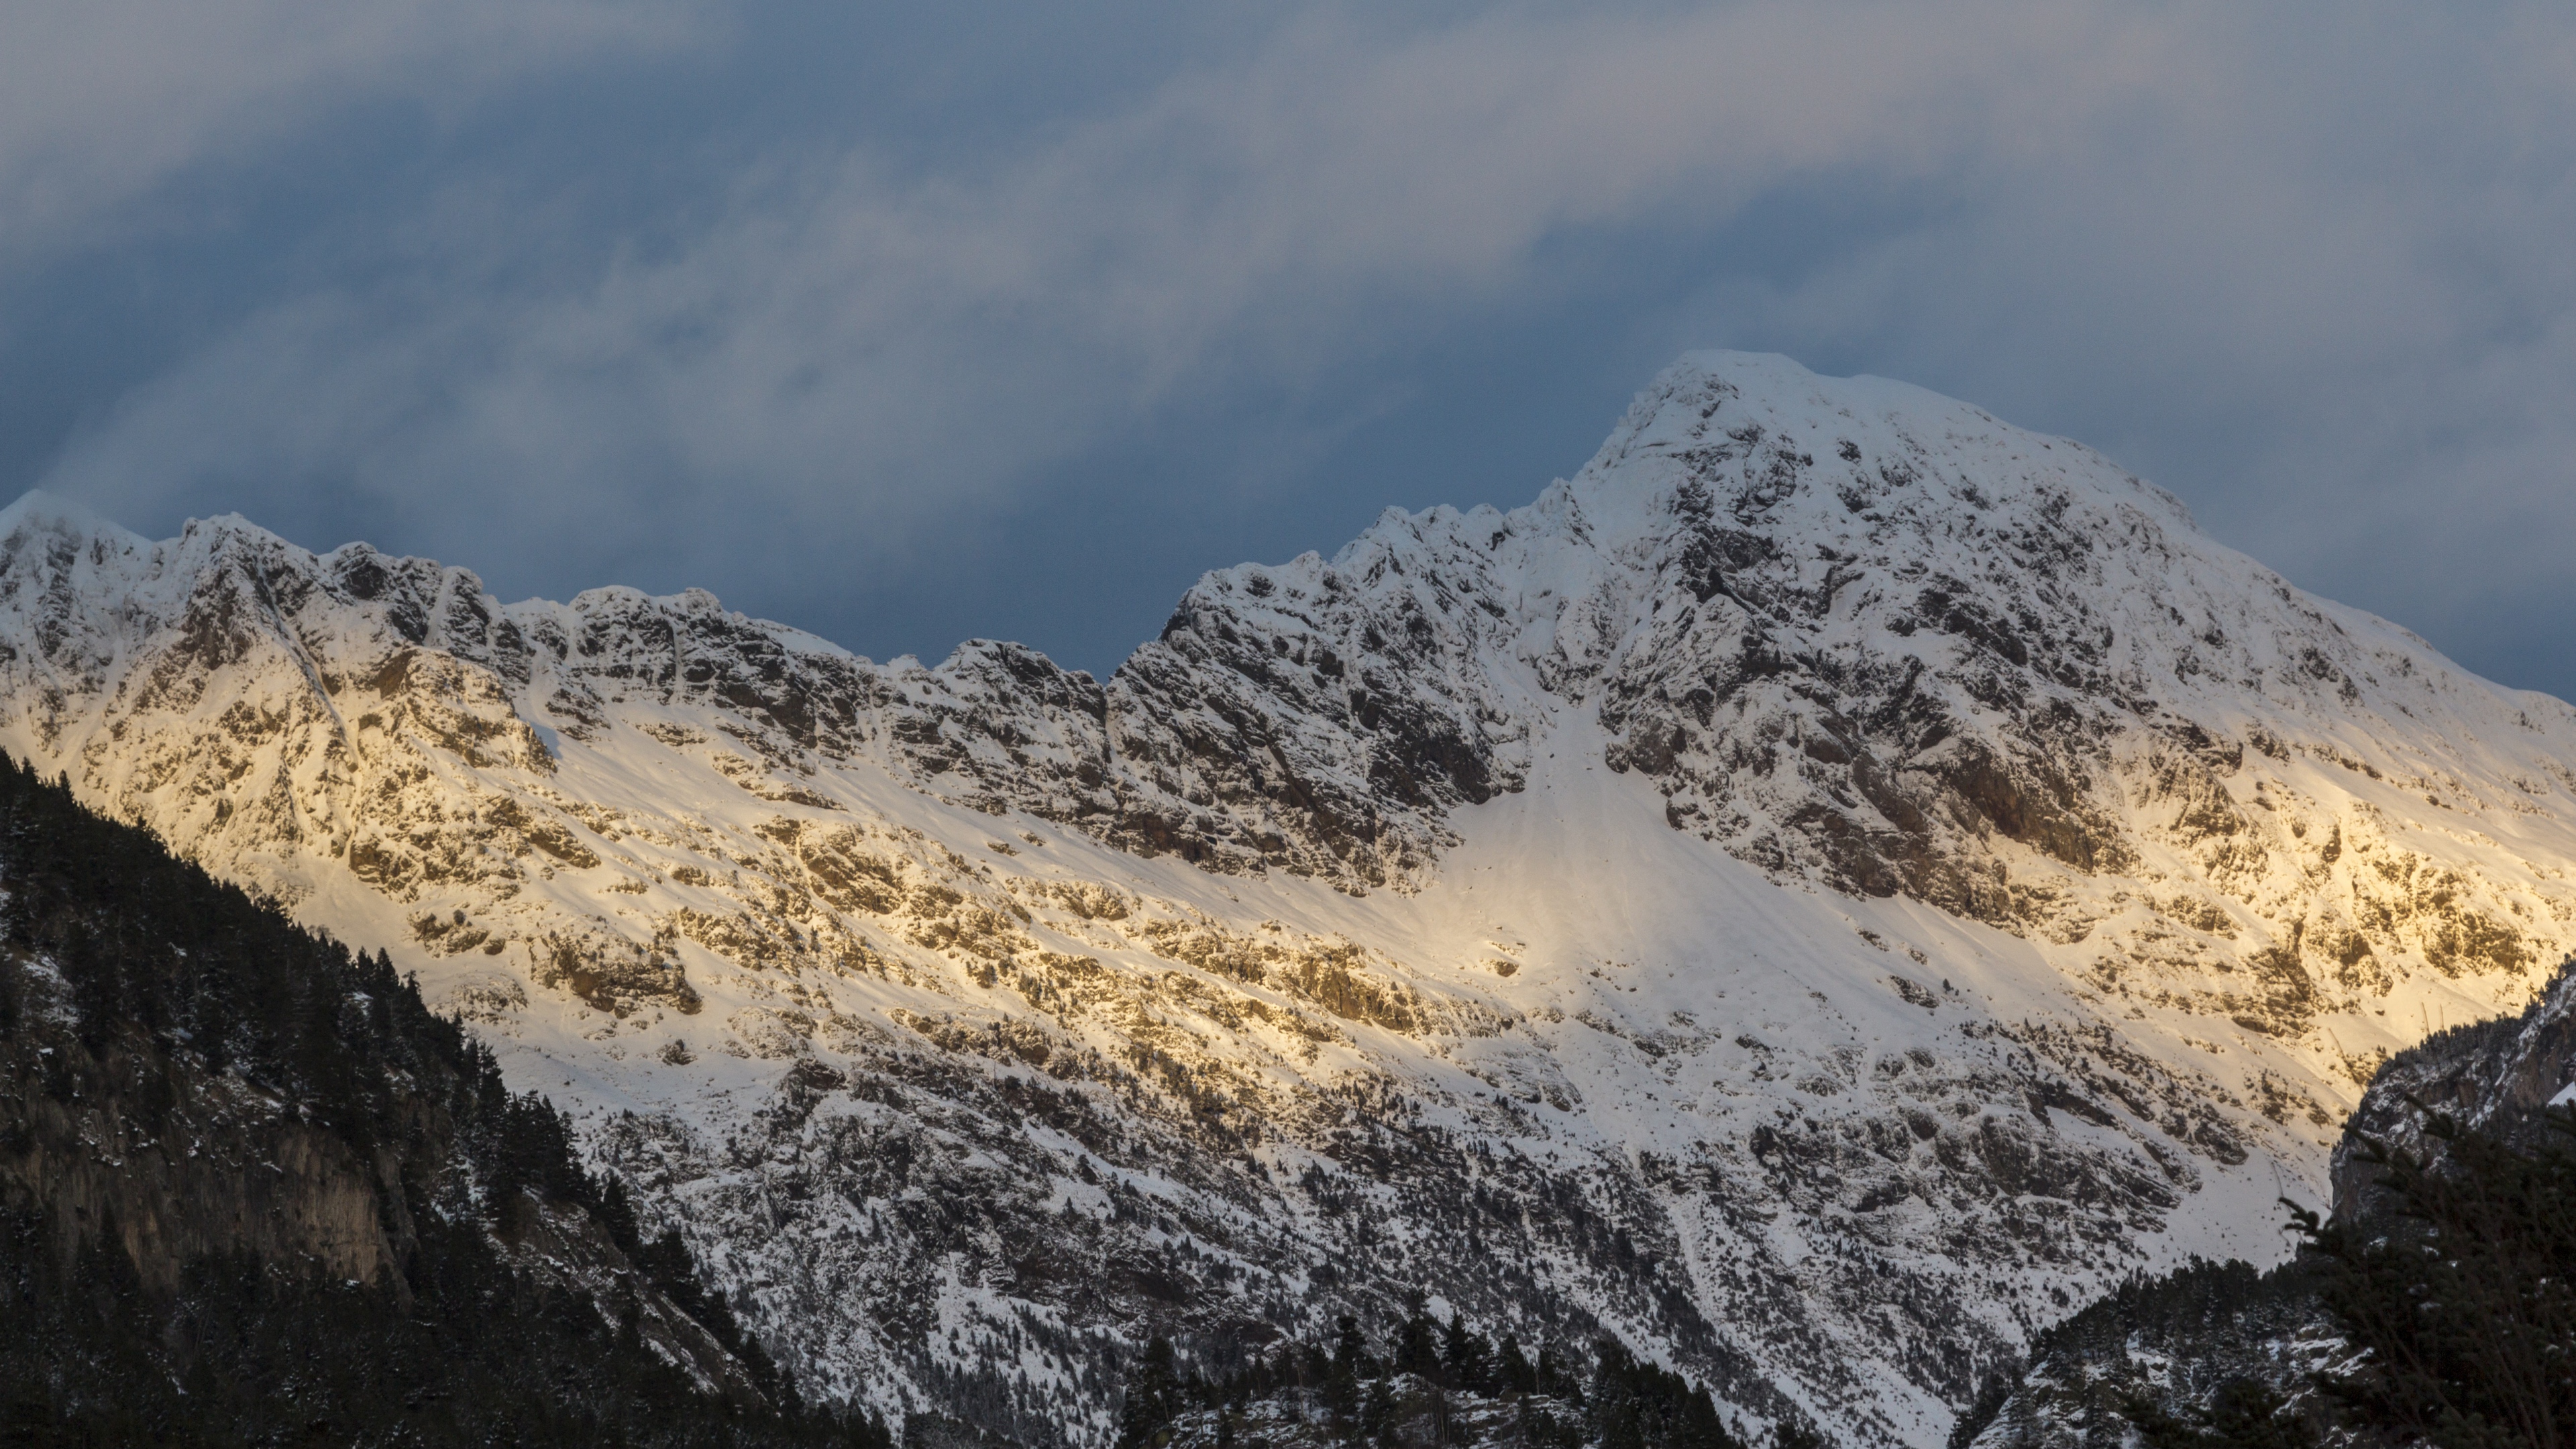 کوهستان برفی زیبا در یک نمای HD مناسب چاپ بنر